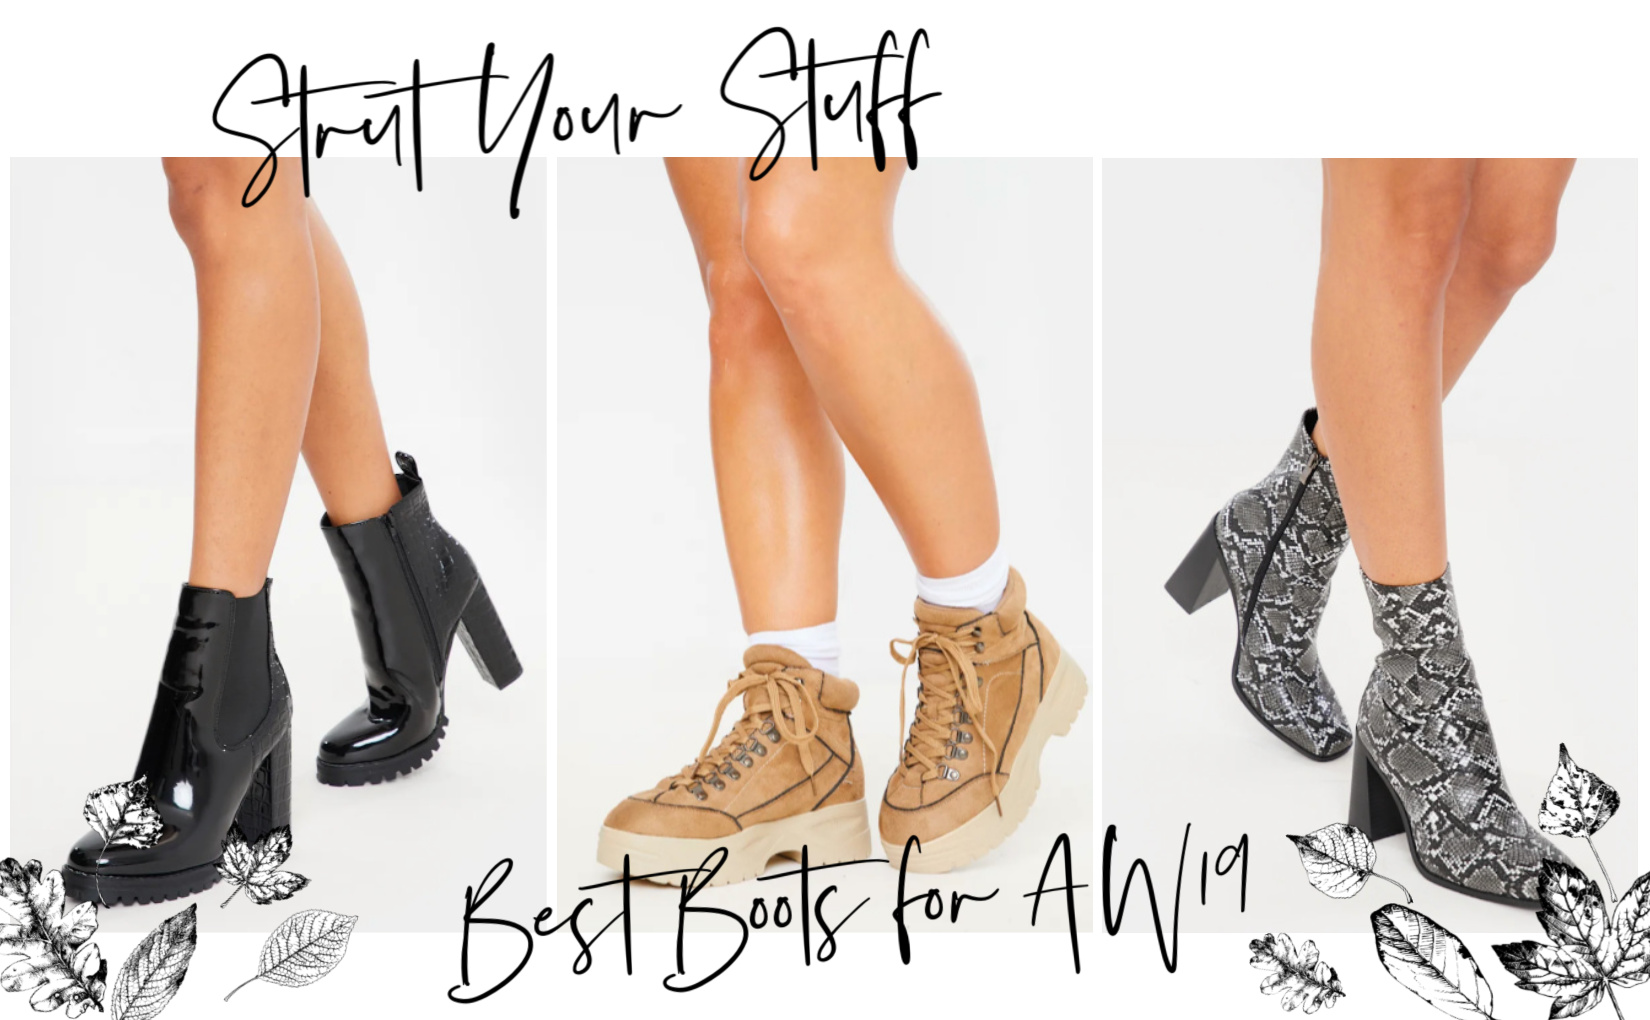 Strut your stuff: Beau Boots for Autumn